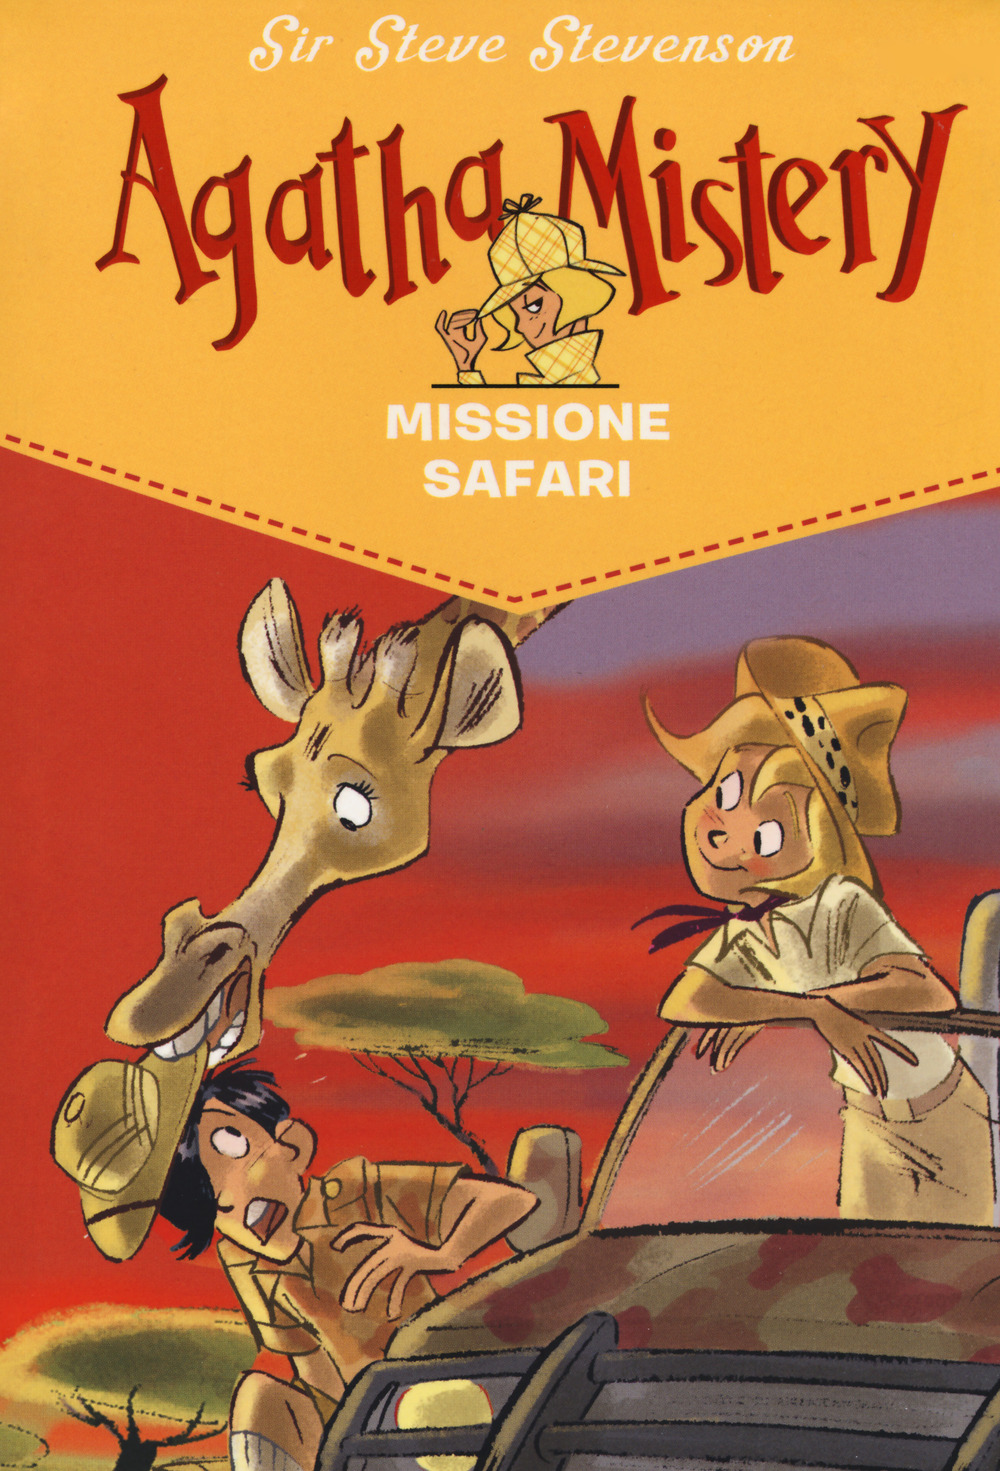 Missione safari